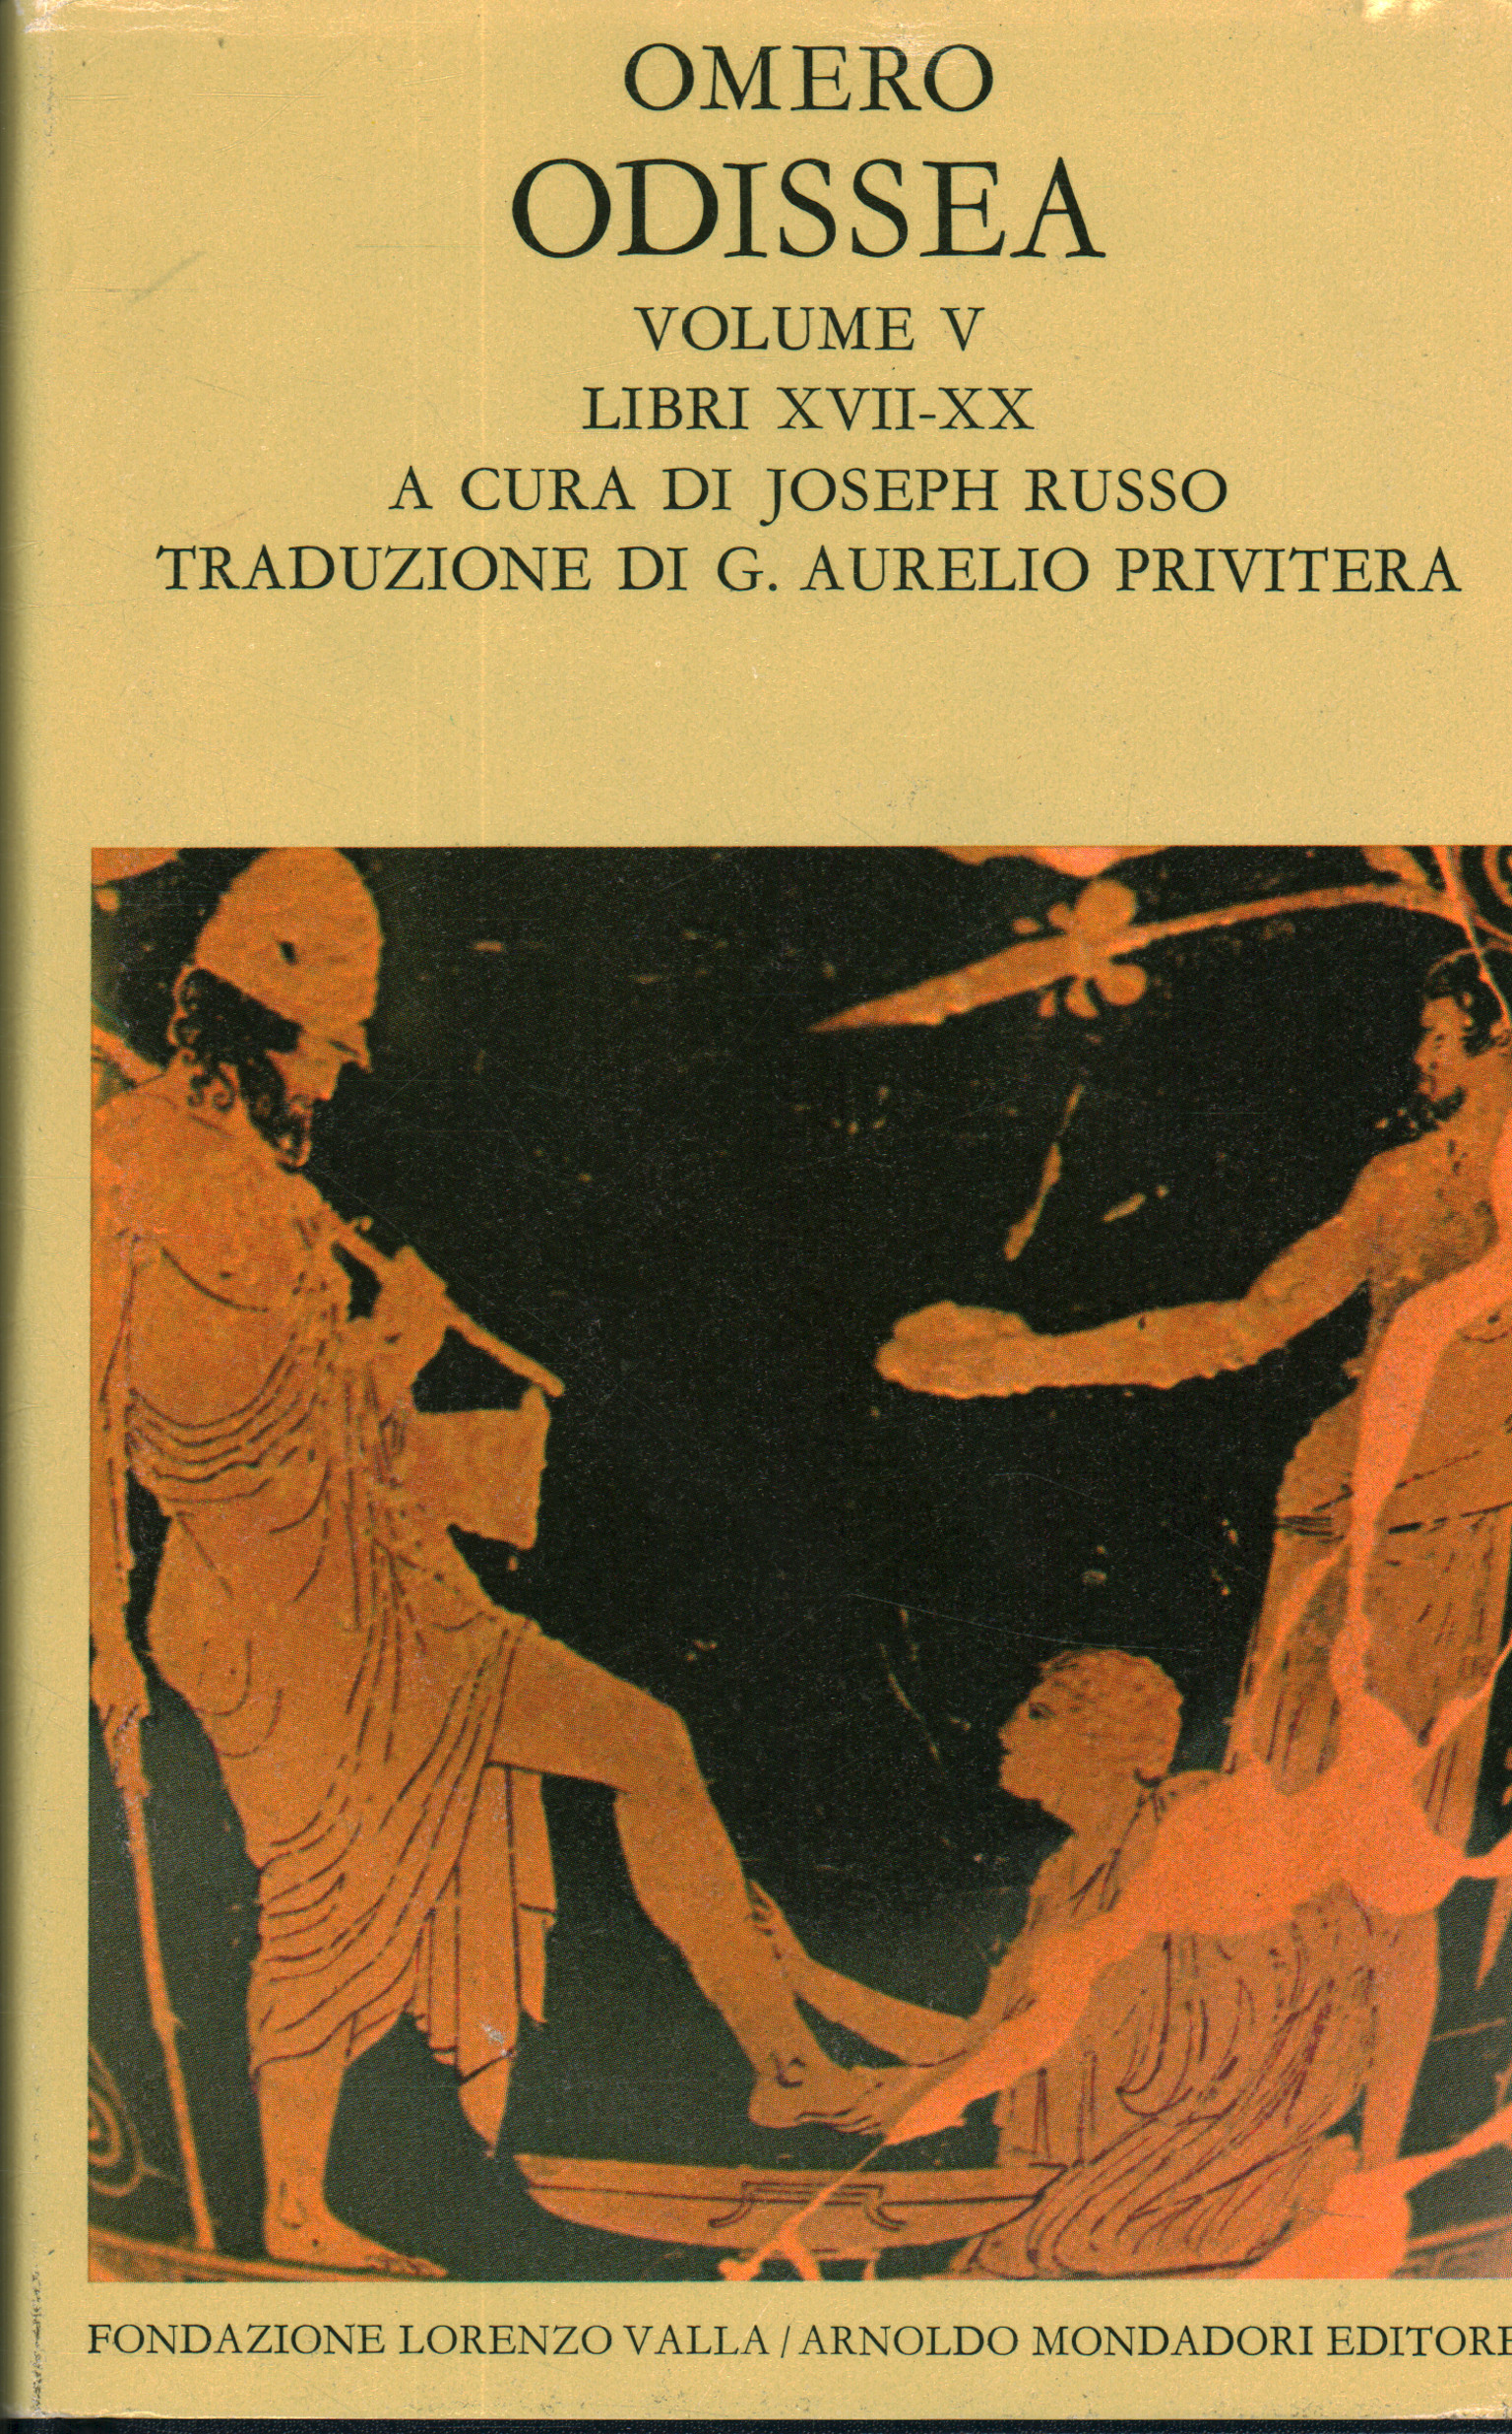 Odissea. Volume V (libri XVII-XX) - Omero